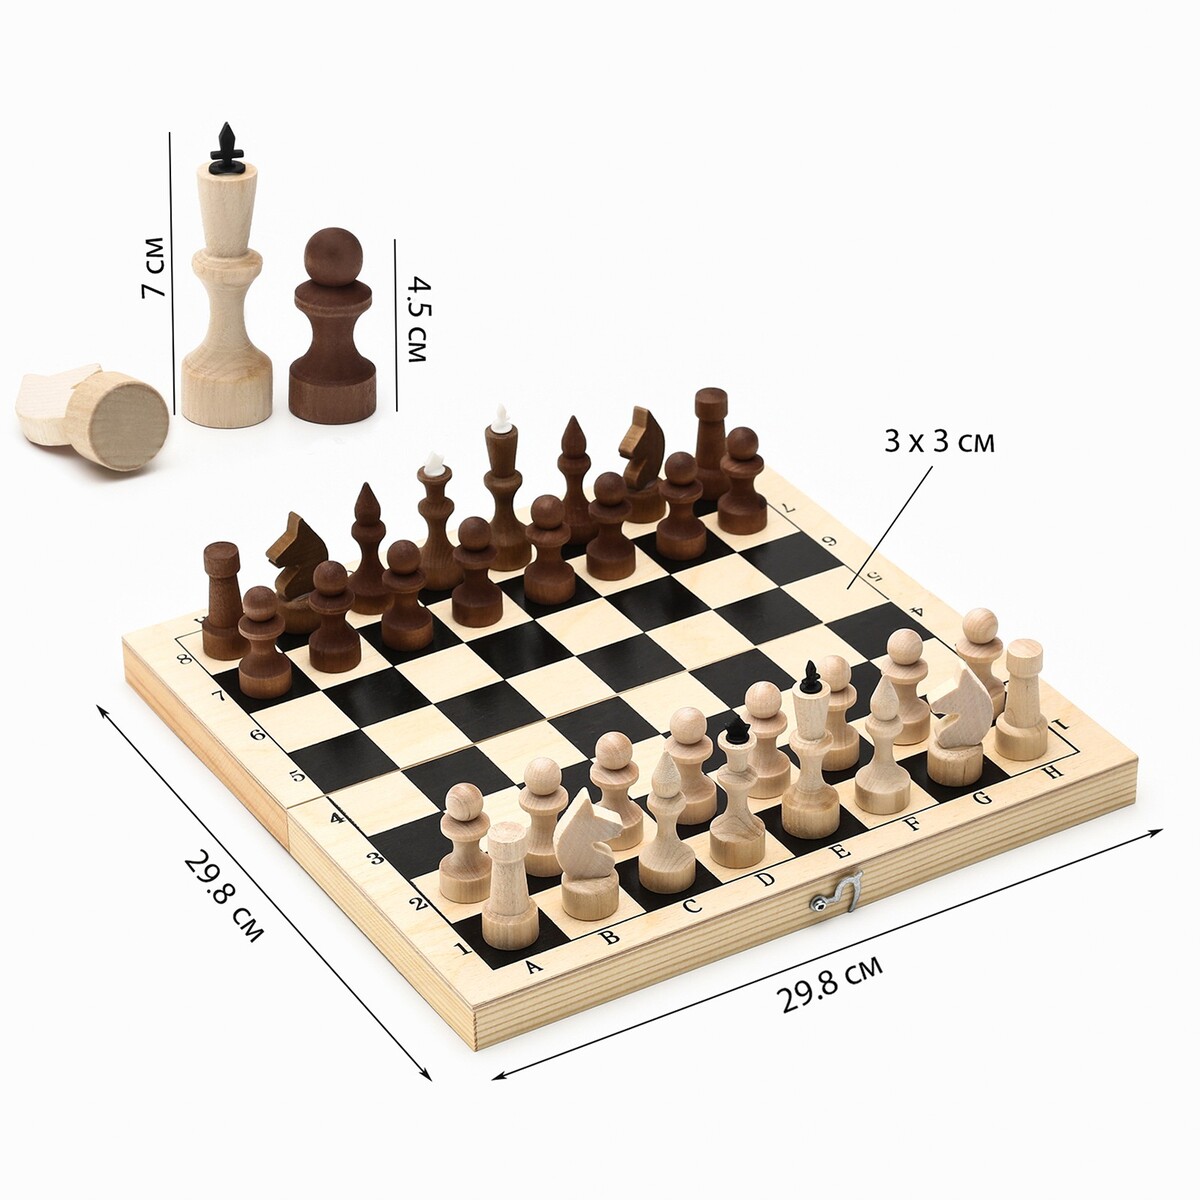 Шахматы деревянные обиходные 29.8 х 29.8 см, король h-7.2 см, пешка h-4.5 см шахматы деревянные гроссмейстерские турнирные 43 х 43 см король h 10 6 см пешка h 5 6 см